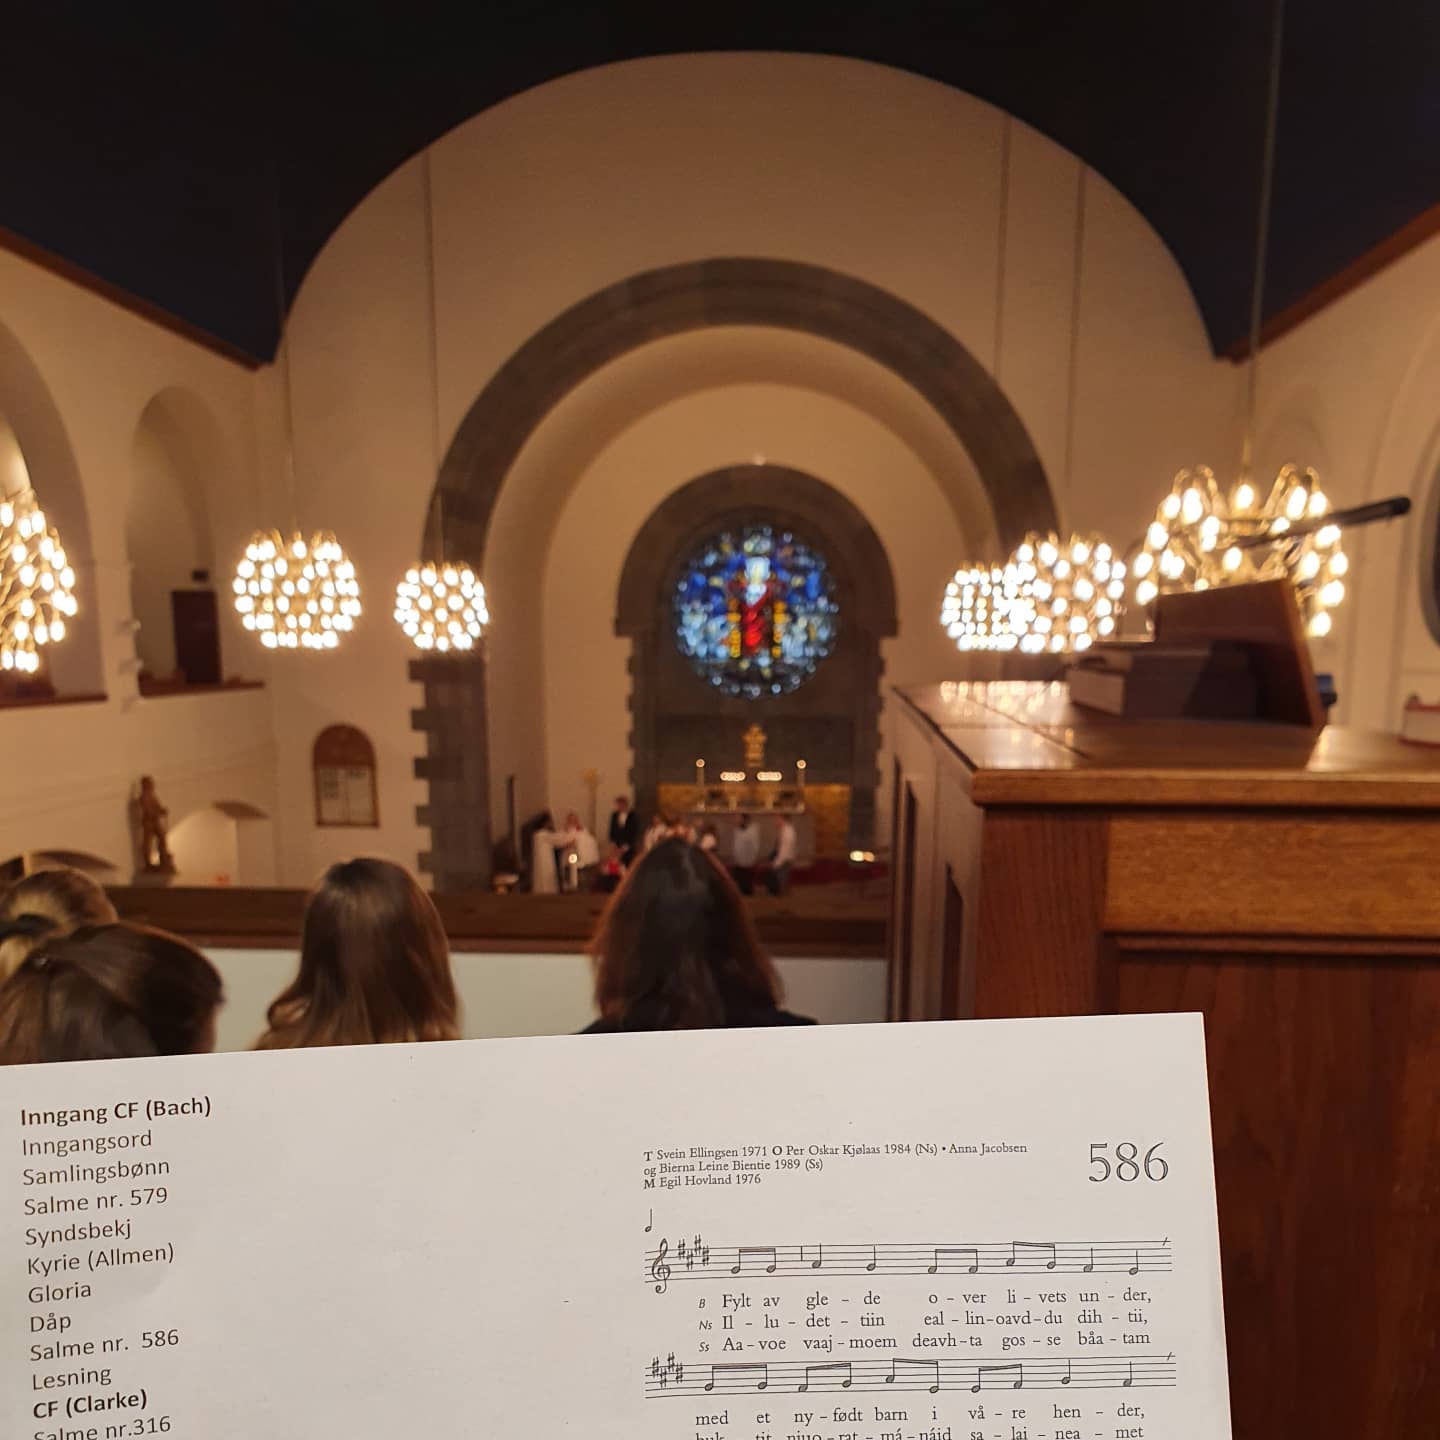 Fra korgalleriet i Frogner kirke deltar vi på en dåpsgudstjeneste, en del av vårt samarbeide med kirken.
En fin anledning til å synge fra a cappella-repertoaret vårt. #kirke #acapella #søndag #orgel #gudstjeneste #Bach #Clarke #Schütz